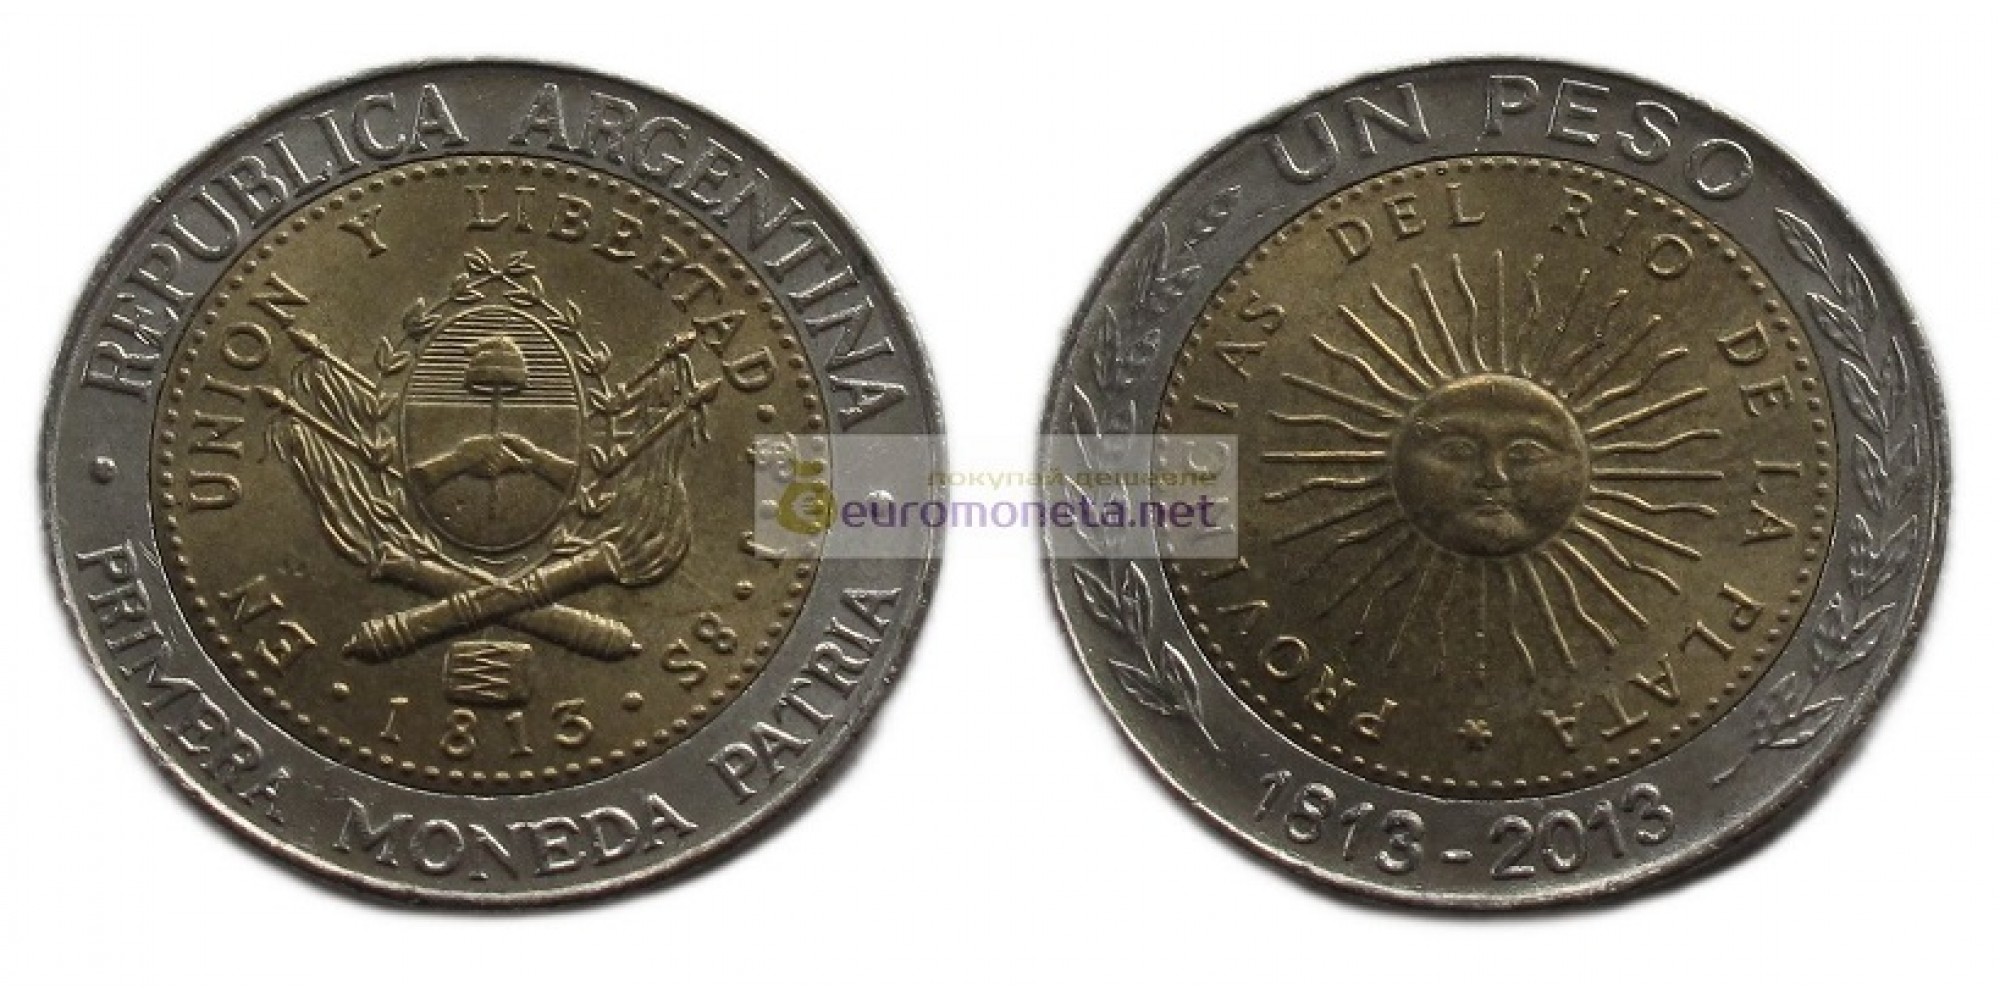 Аргентина 1 песо 2013 год 200 лет первой национальной монете. биметалл